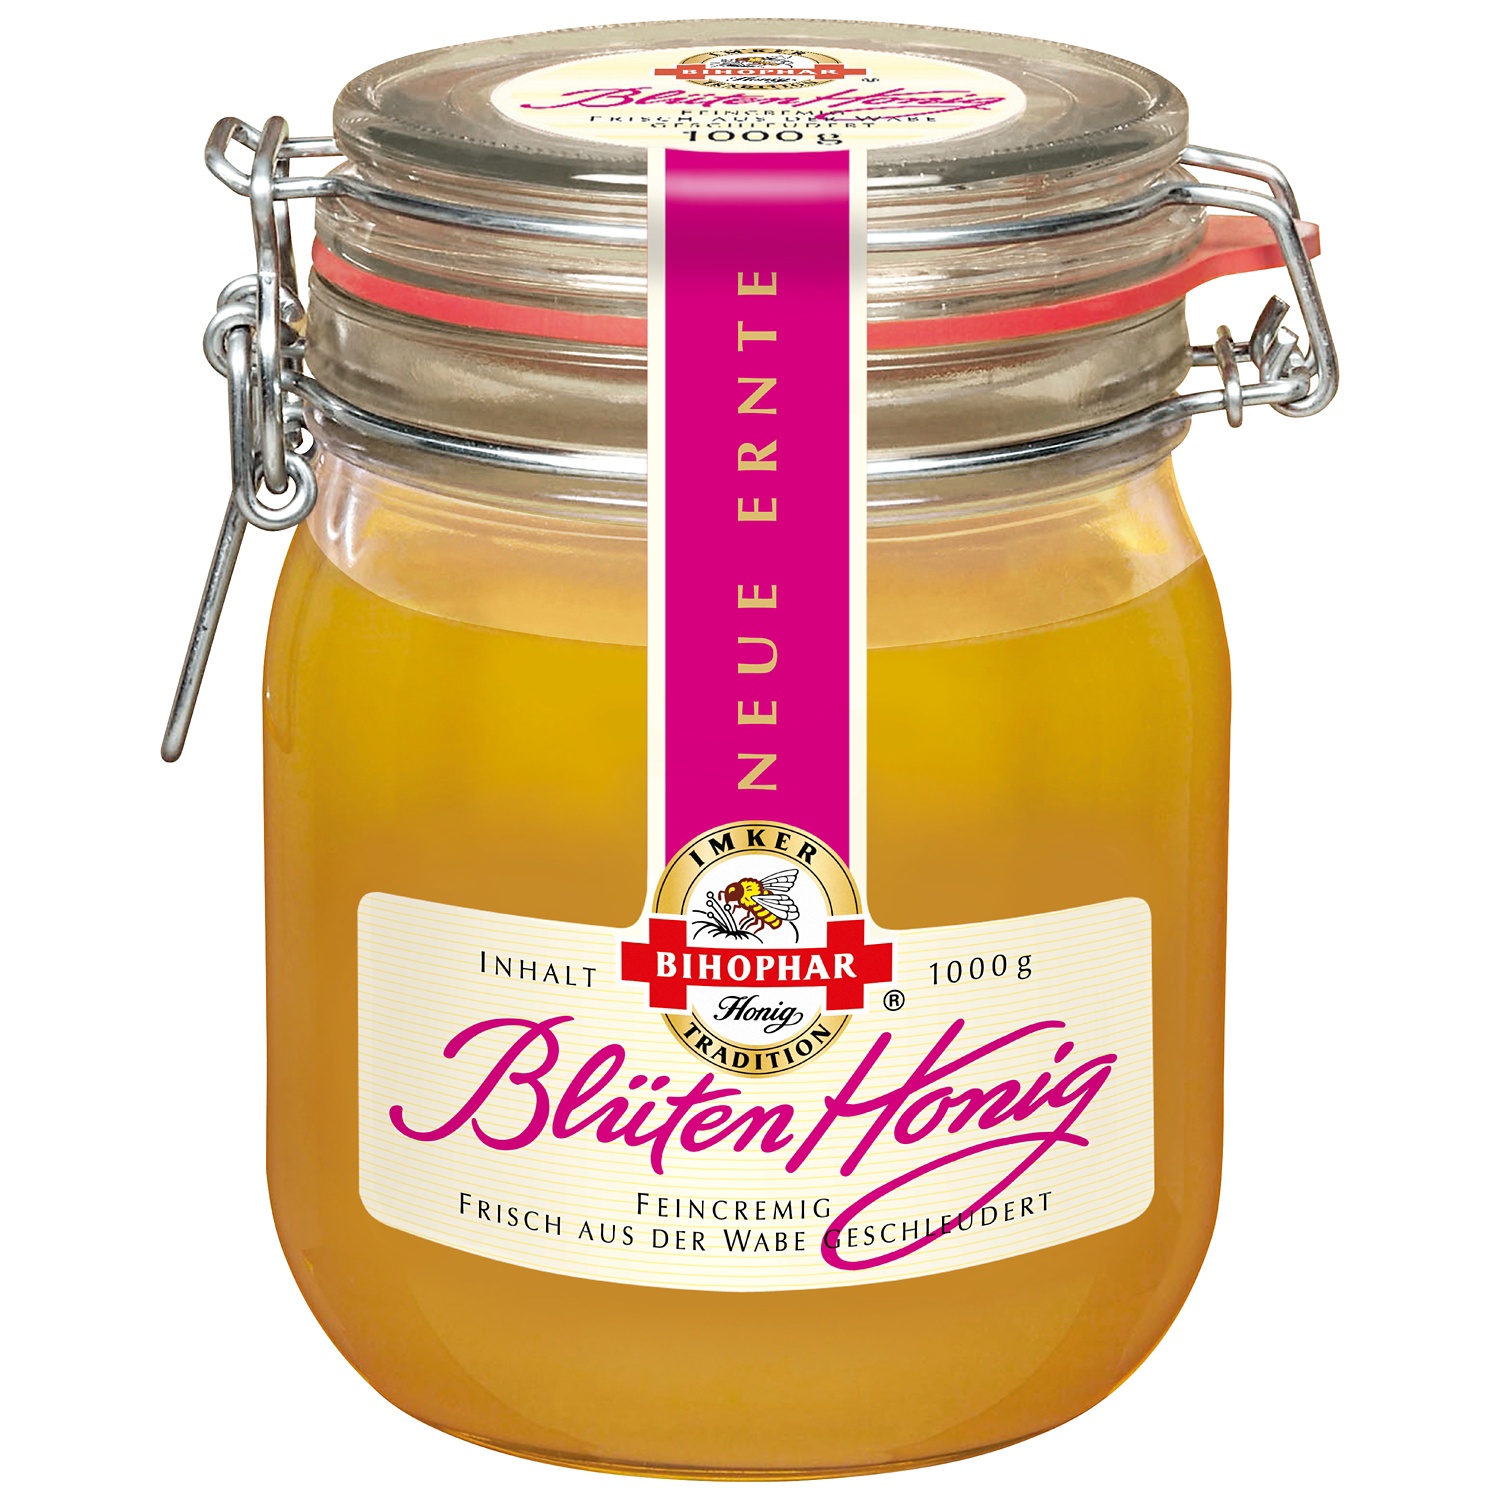 Miele in vasetto con chiusura ermetica, cremoso